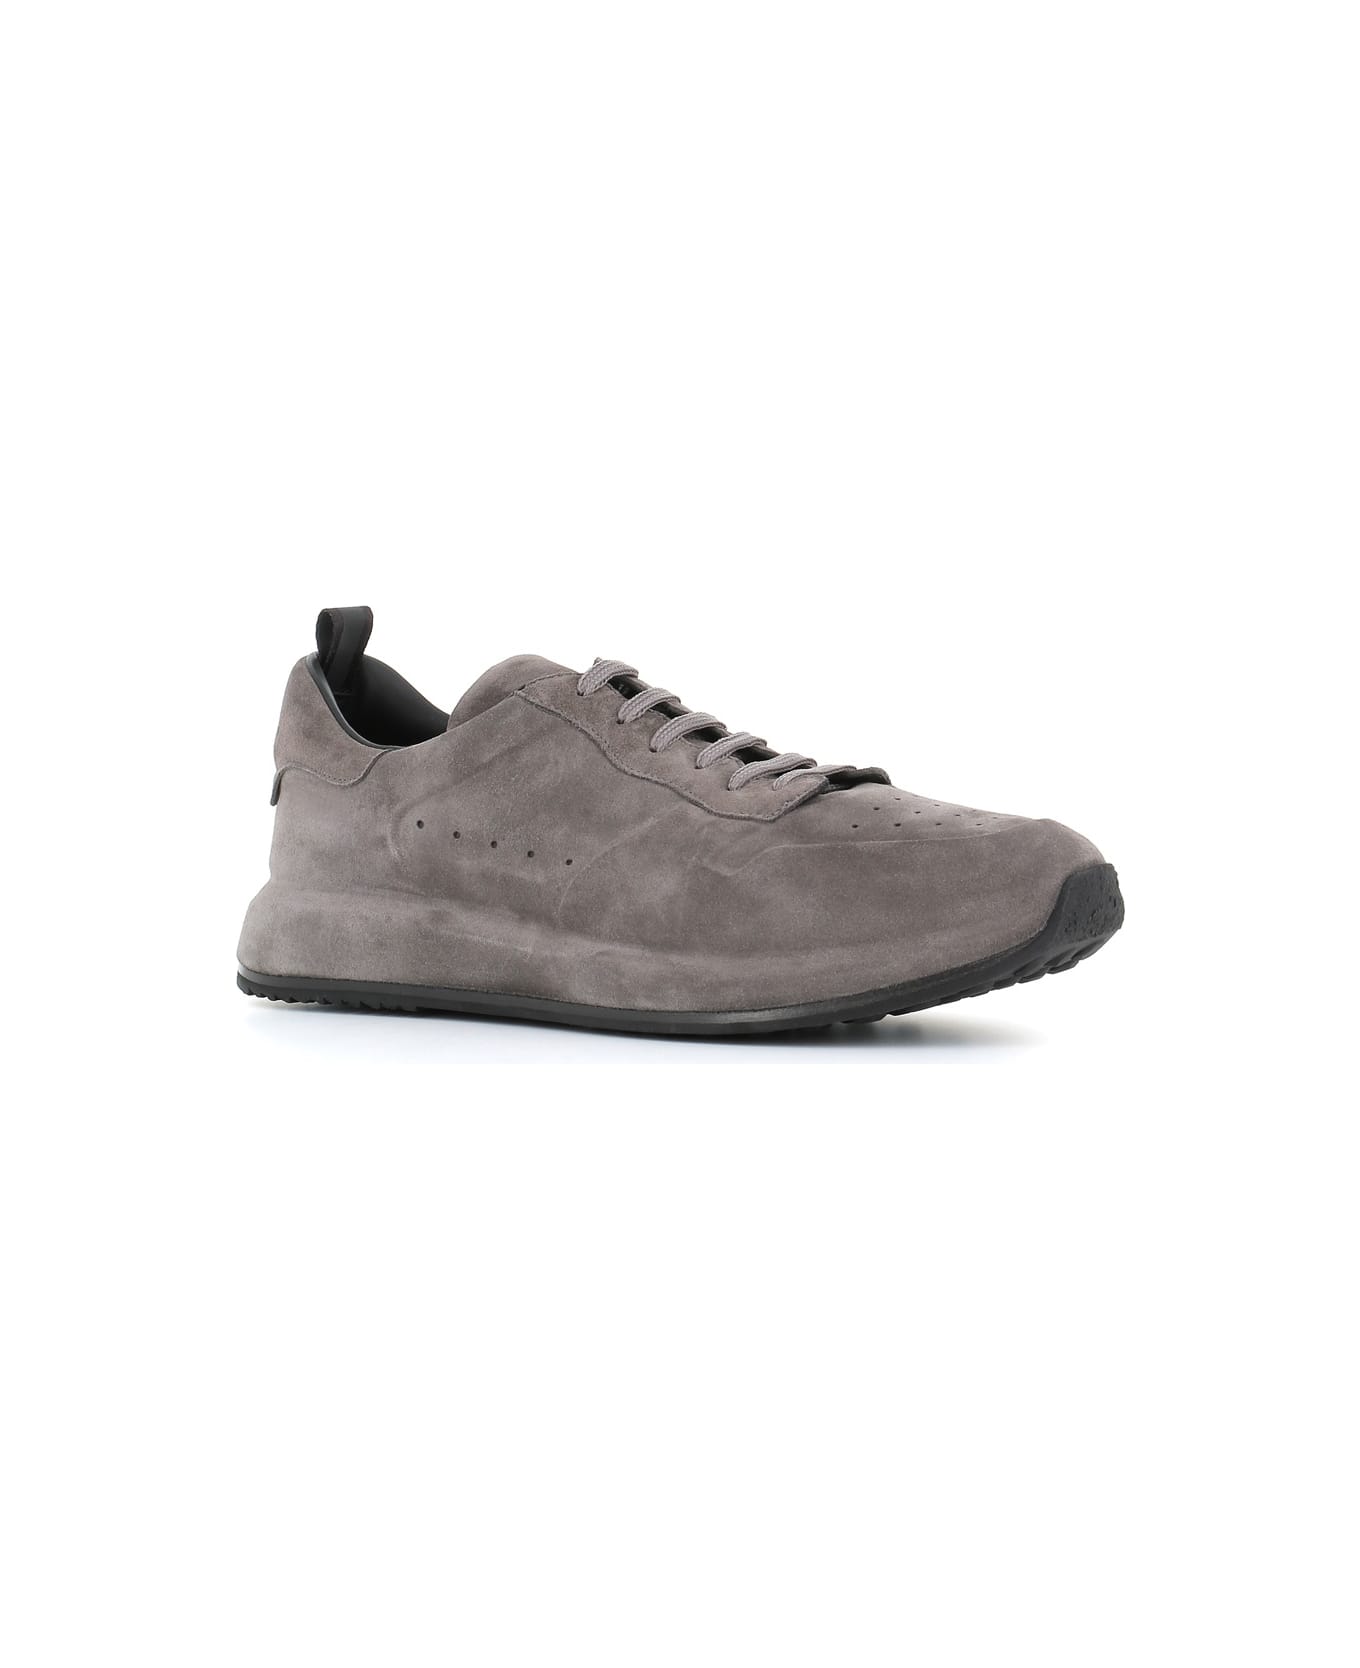 Officine Creative Sneaker Race Lux/003 - Dark grey スニーカー